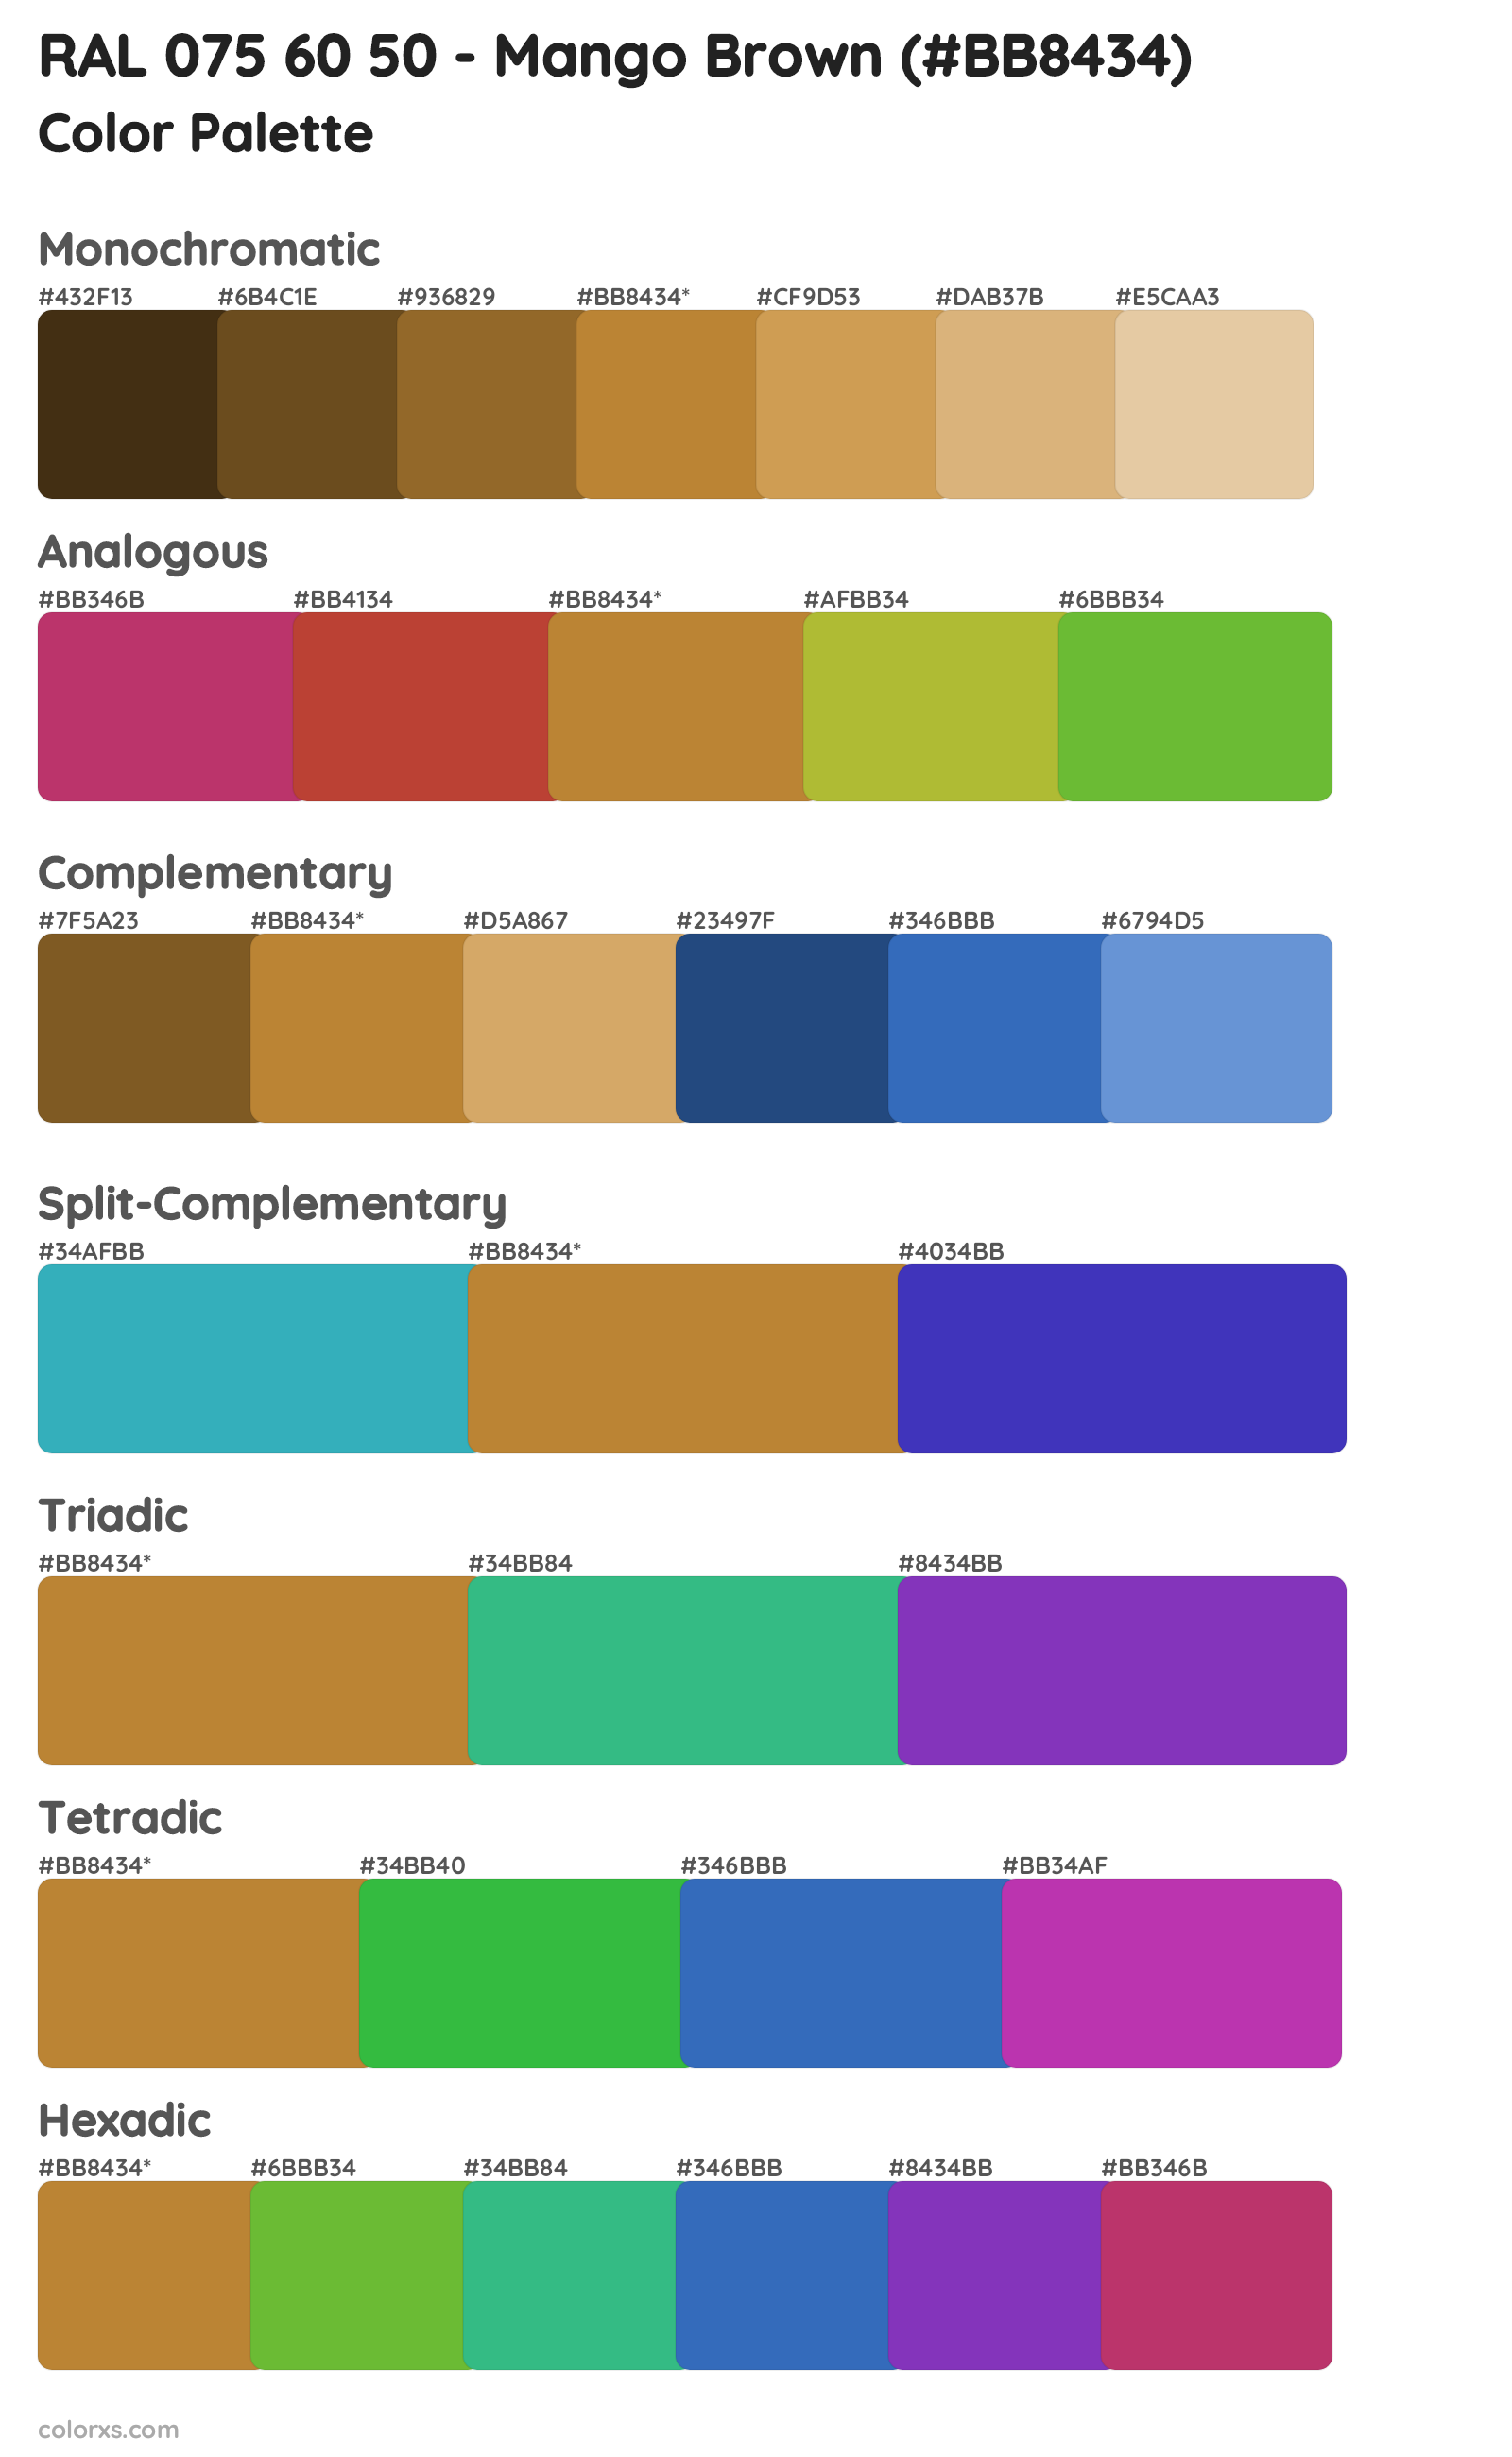 RAL 075 60 50 - Mango Brown Color Scheme Palettes